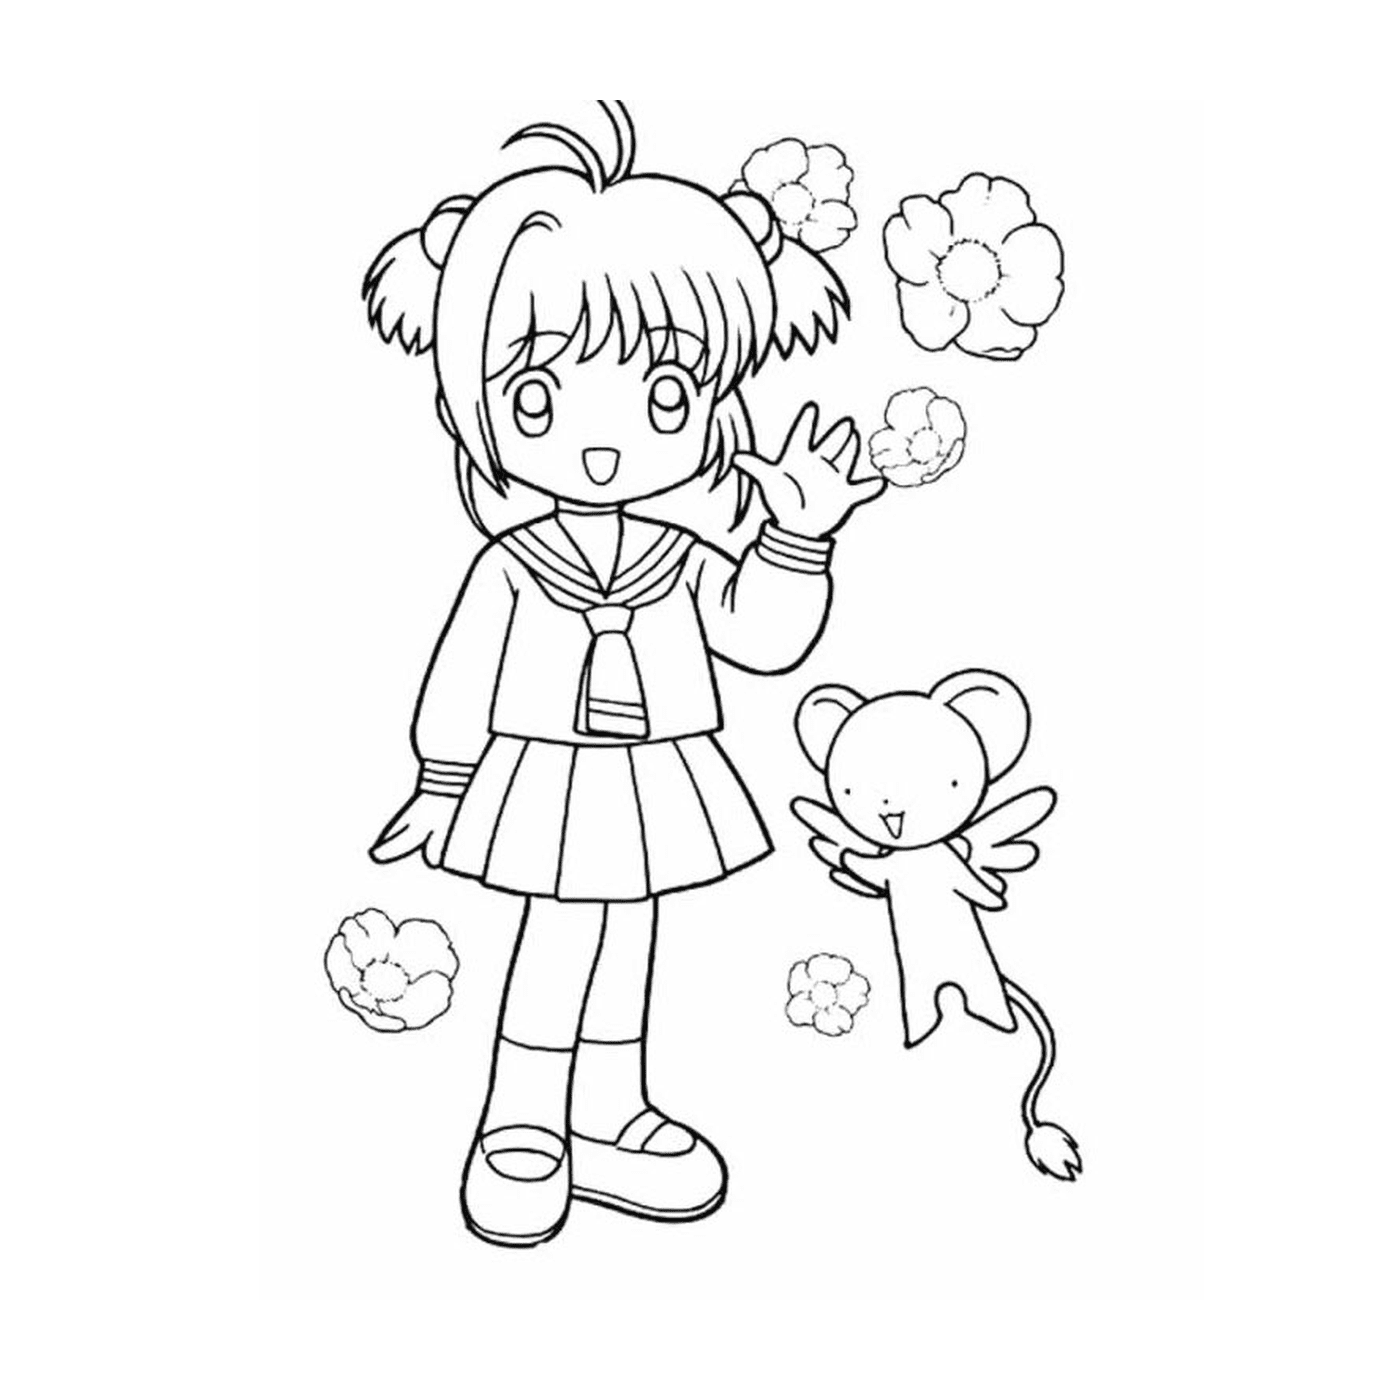  A little girl holding a teddy bear 